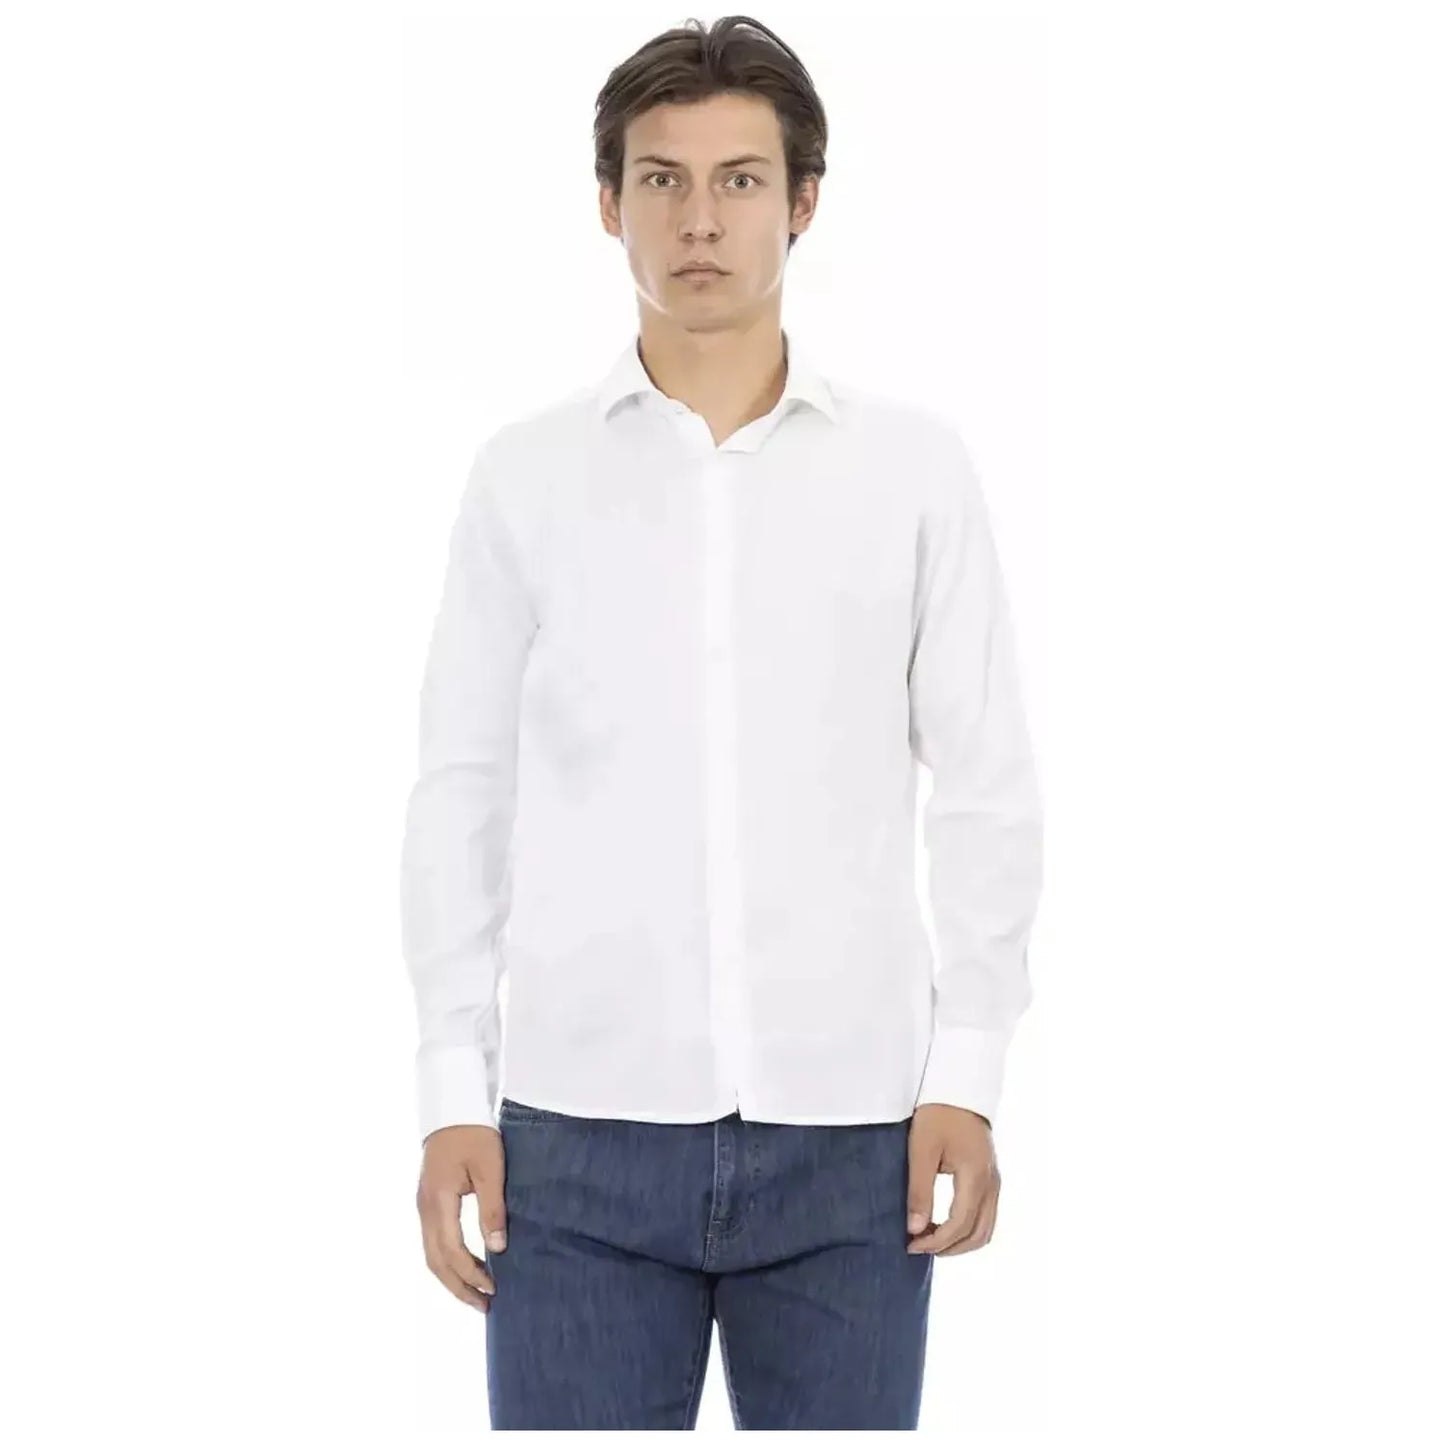 Baldinini Trend Elegant Slim Fit White Cotton Shirt white-viscose-shirt